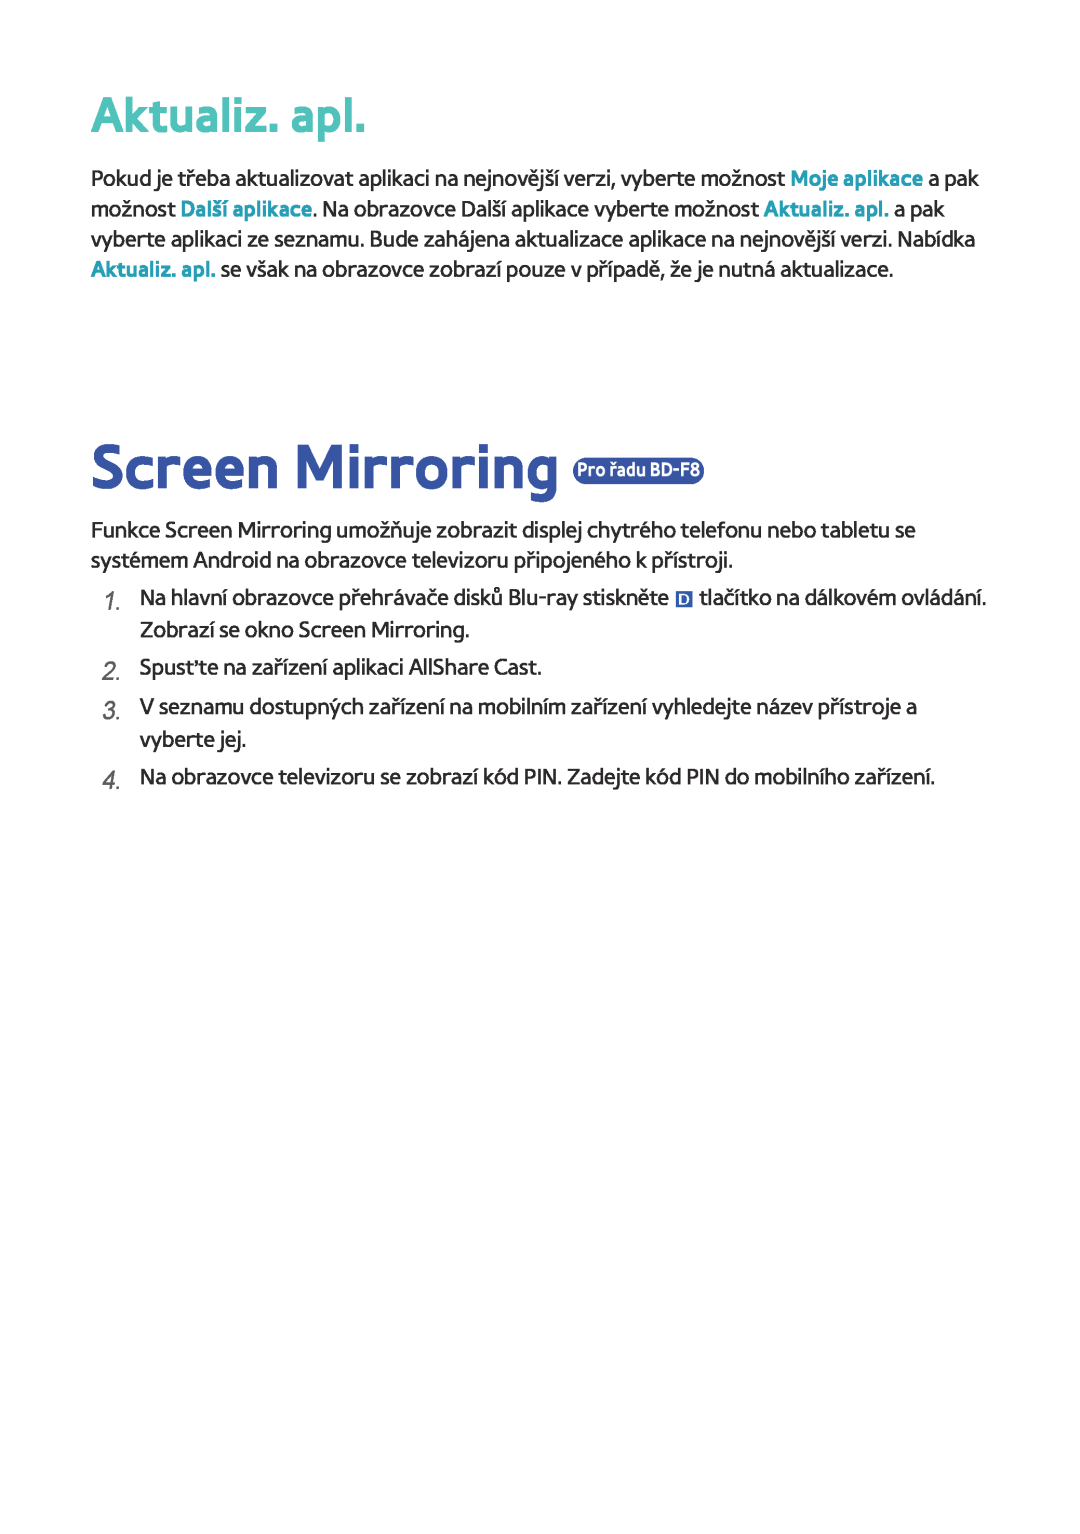 Samsung BD-F8500/EN, BD-F8900/EN, BD-F6900/EN manual Screen Mirroring Pro řadu BD-F8, Aktualiz. apl 